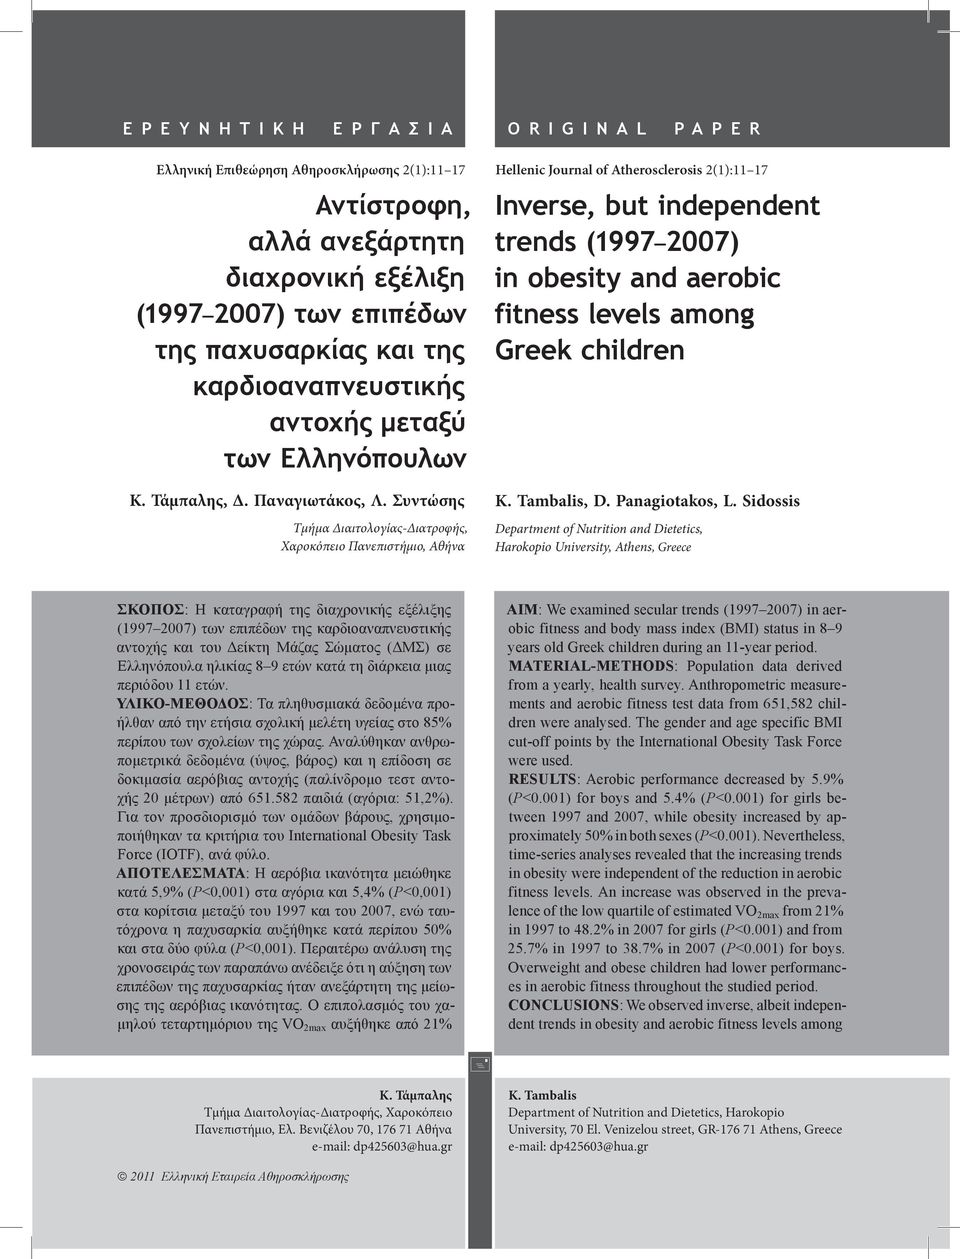 Συντώσης Τμήμα Διαιτολογίας-Διατροφής, Χαροκόπειο Πανεπιστήμιο, Αθήνα Hellenic Journal of Atherosclerosis 2(1):11 17 Inverse, but independent trends (1997 2007) in obesity and aerobic fitness levels